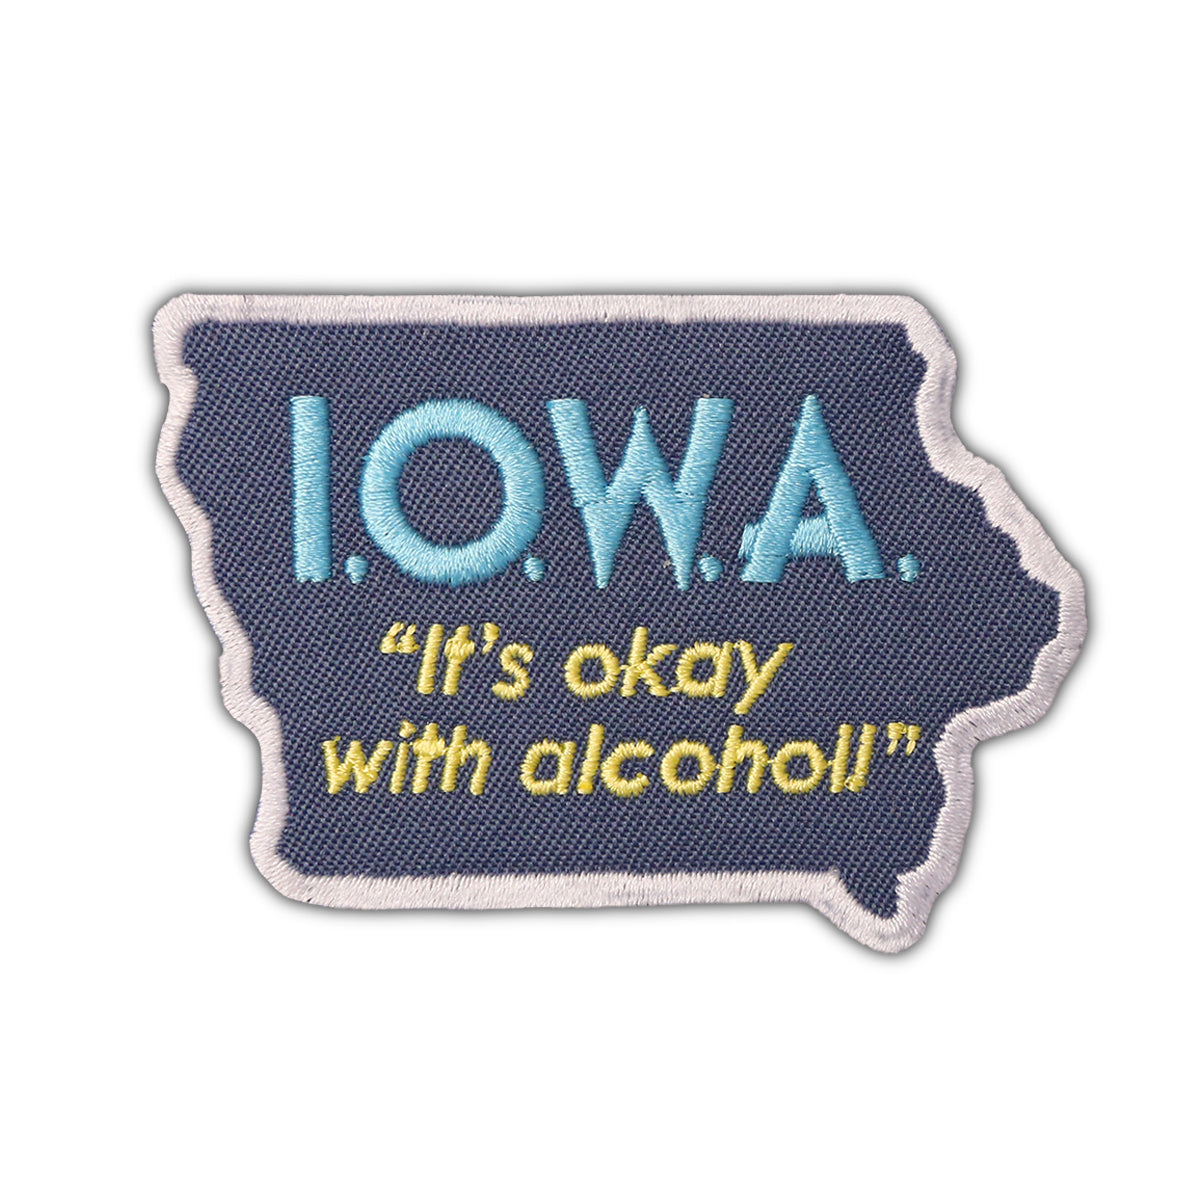 I.O.W.A. It's Okay With Alcohol Patch - Bozz Prints